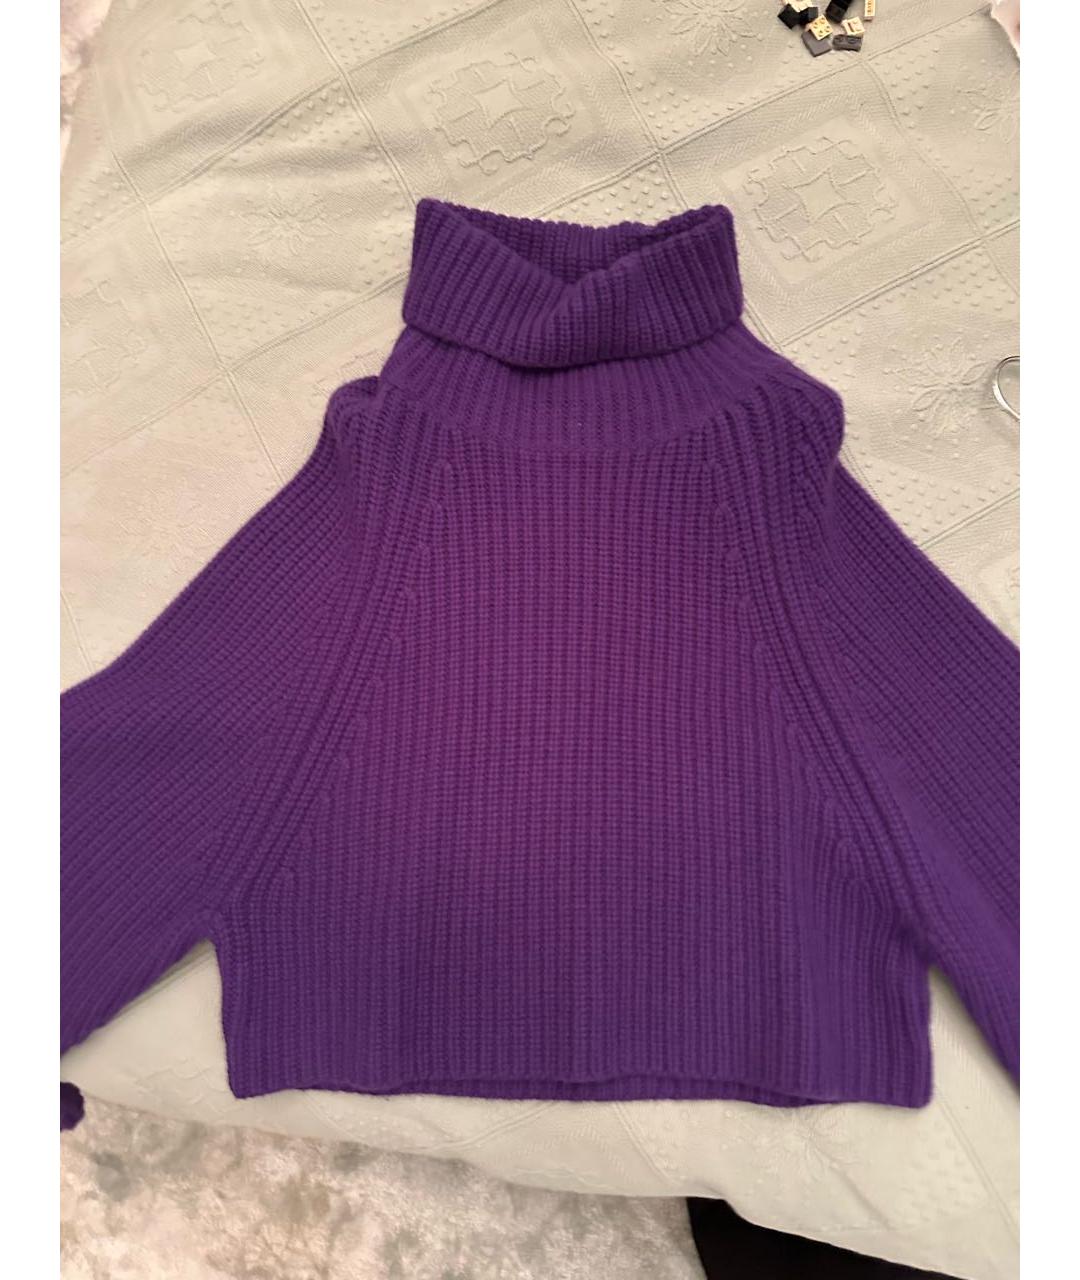 Jacob Lee Фиолетовый кашемировый джемпер / свитер, фото 2